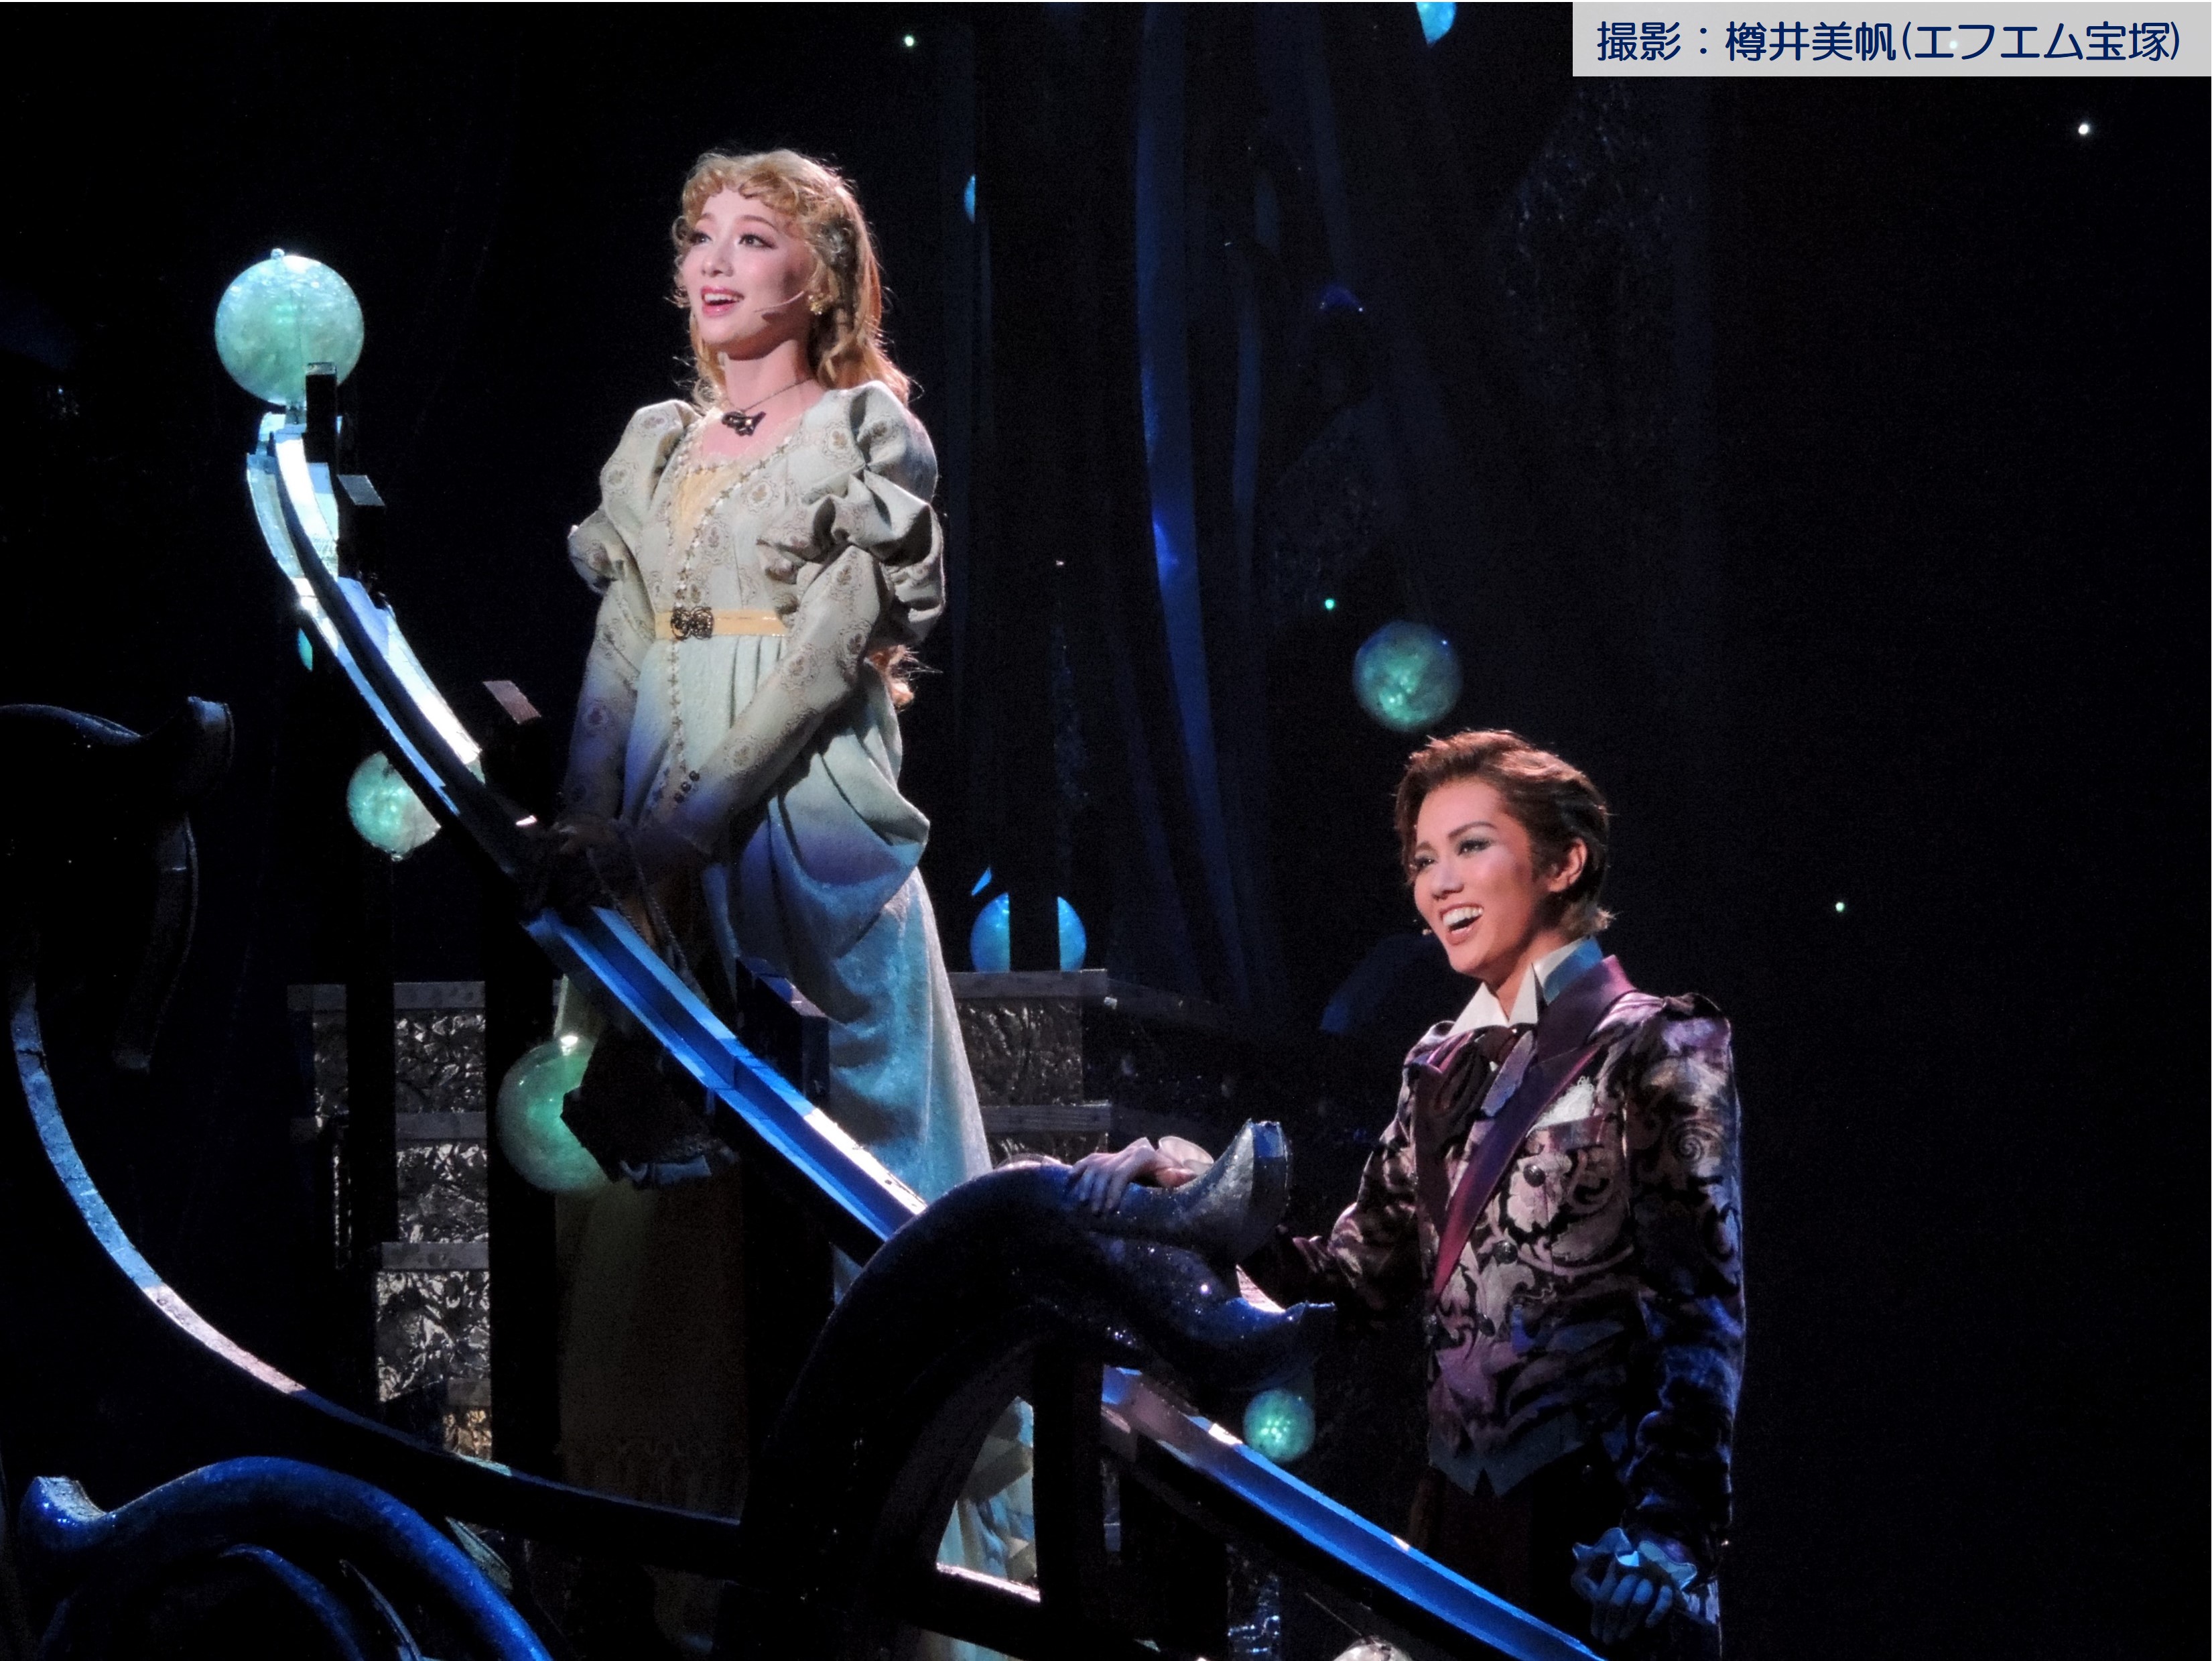 宝塚大劇場雪組公演『Lilacの夢路』－ドロイゼン家の誇り－・『ジュエル・ド・パリ!!』－パリの宝石たち－ エフエム宝塚